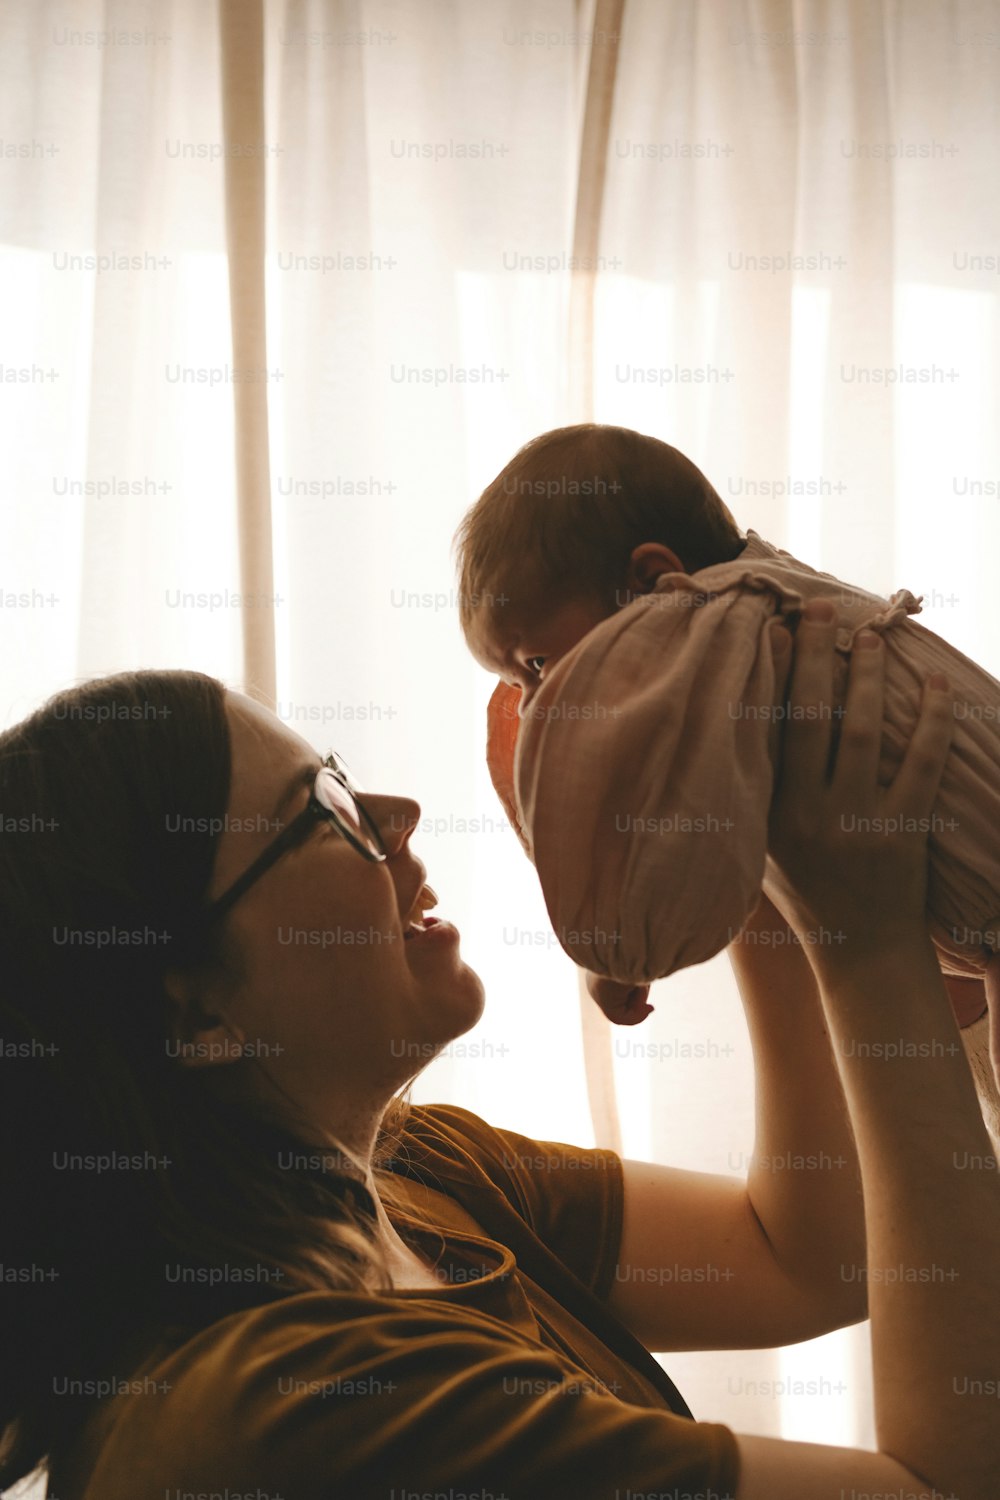 Una mujer sosteniendo a un bebé en su cara